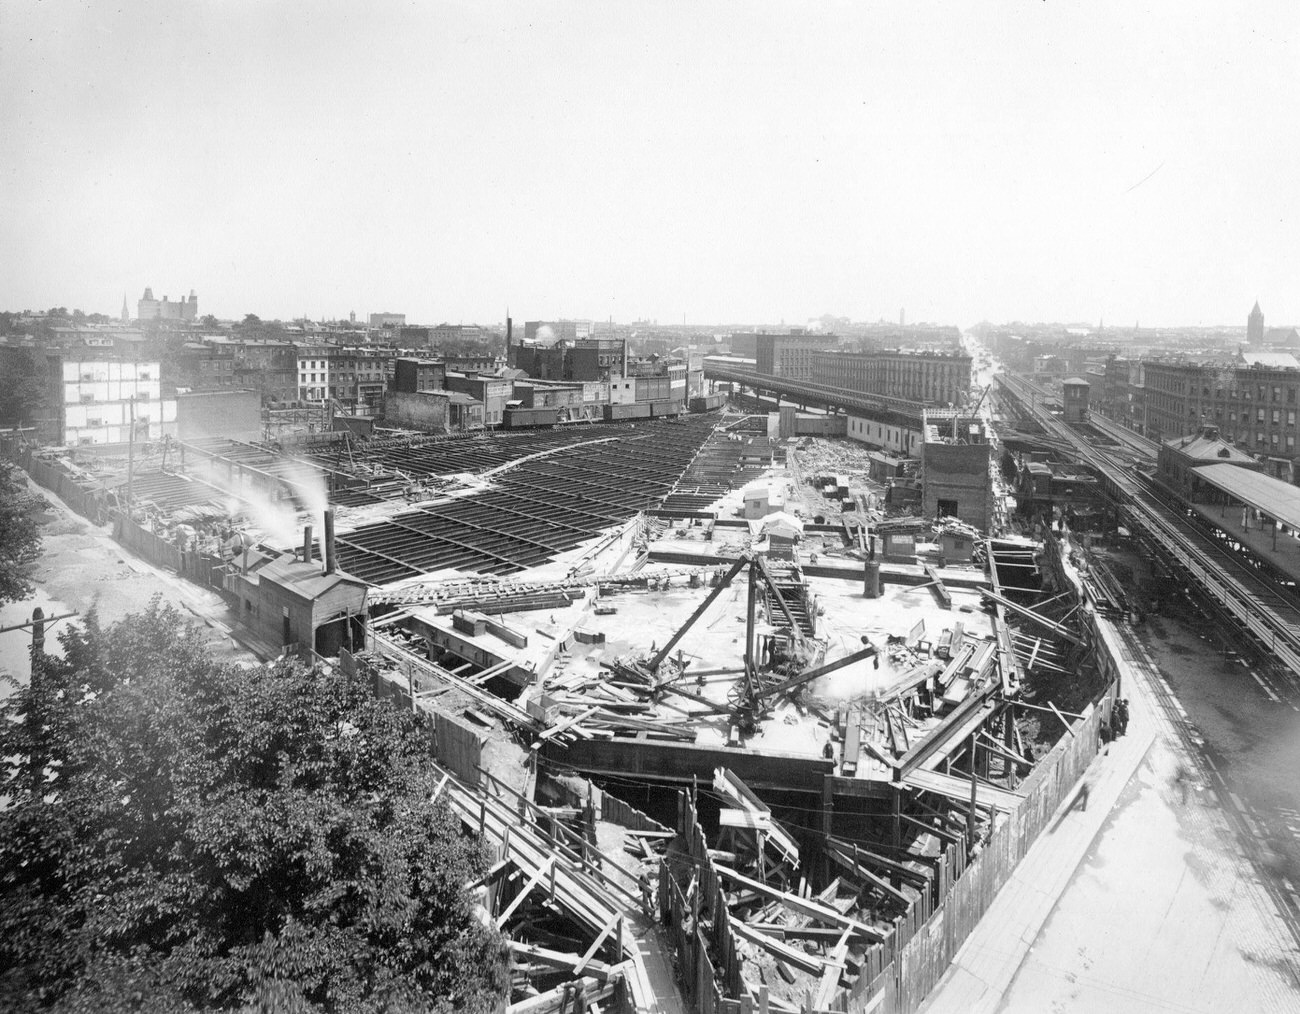 Flatbush Avenue Lirr Station Under Construction, Brooklyn, 1895